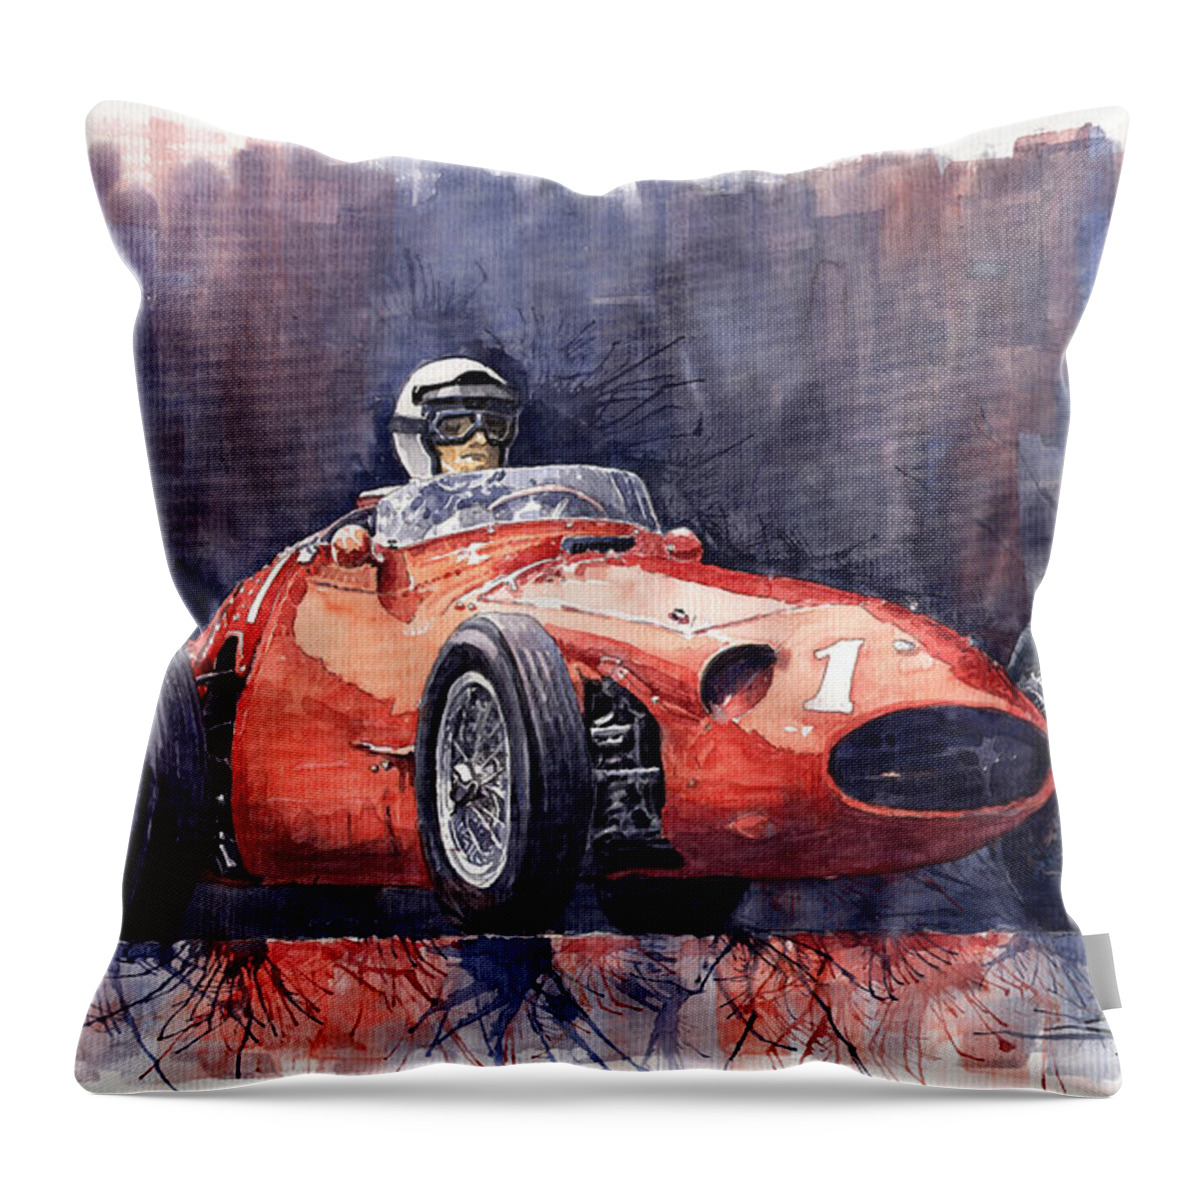 Avto Throw Pillow featuring the painting Maserati 250F by Yuriy Shevchuk